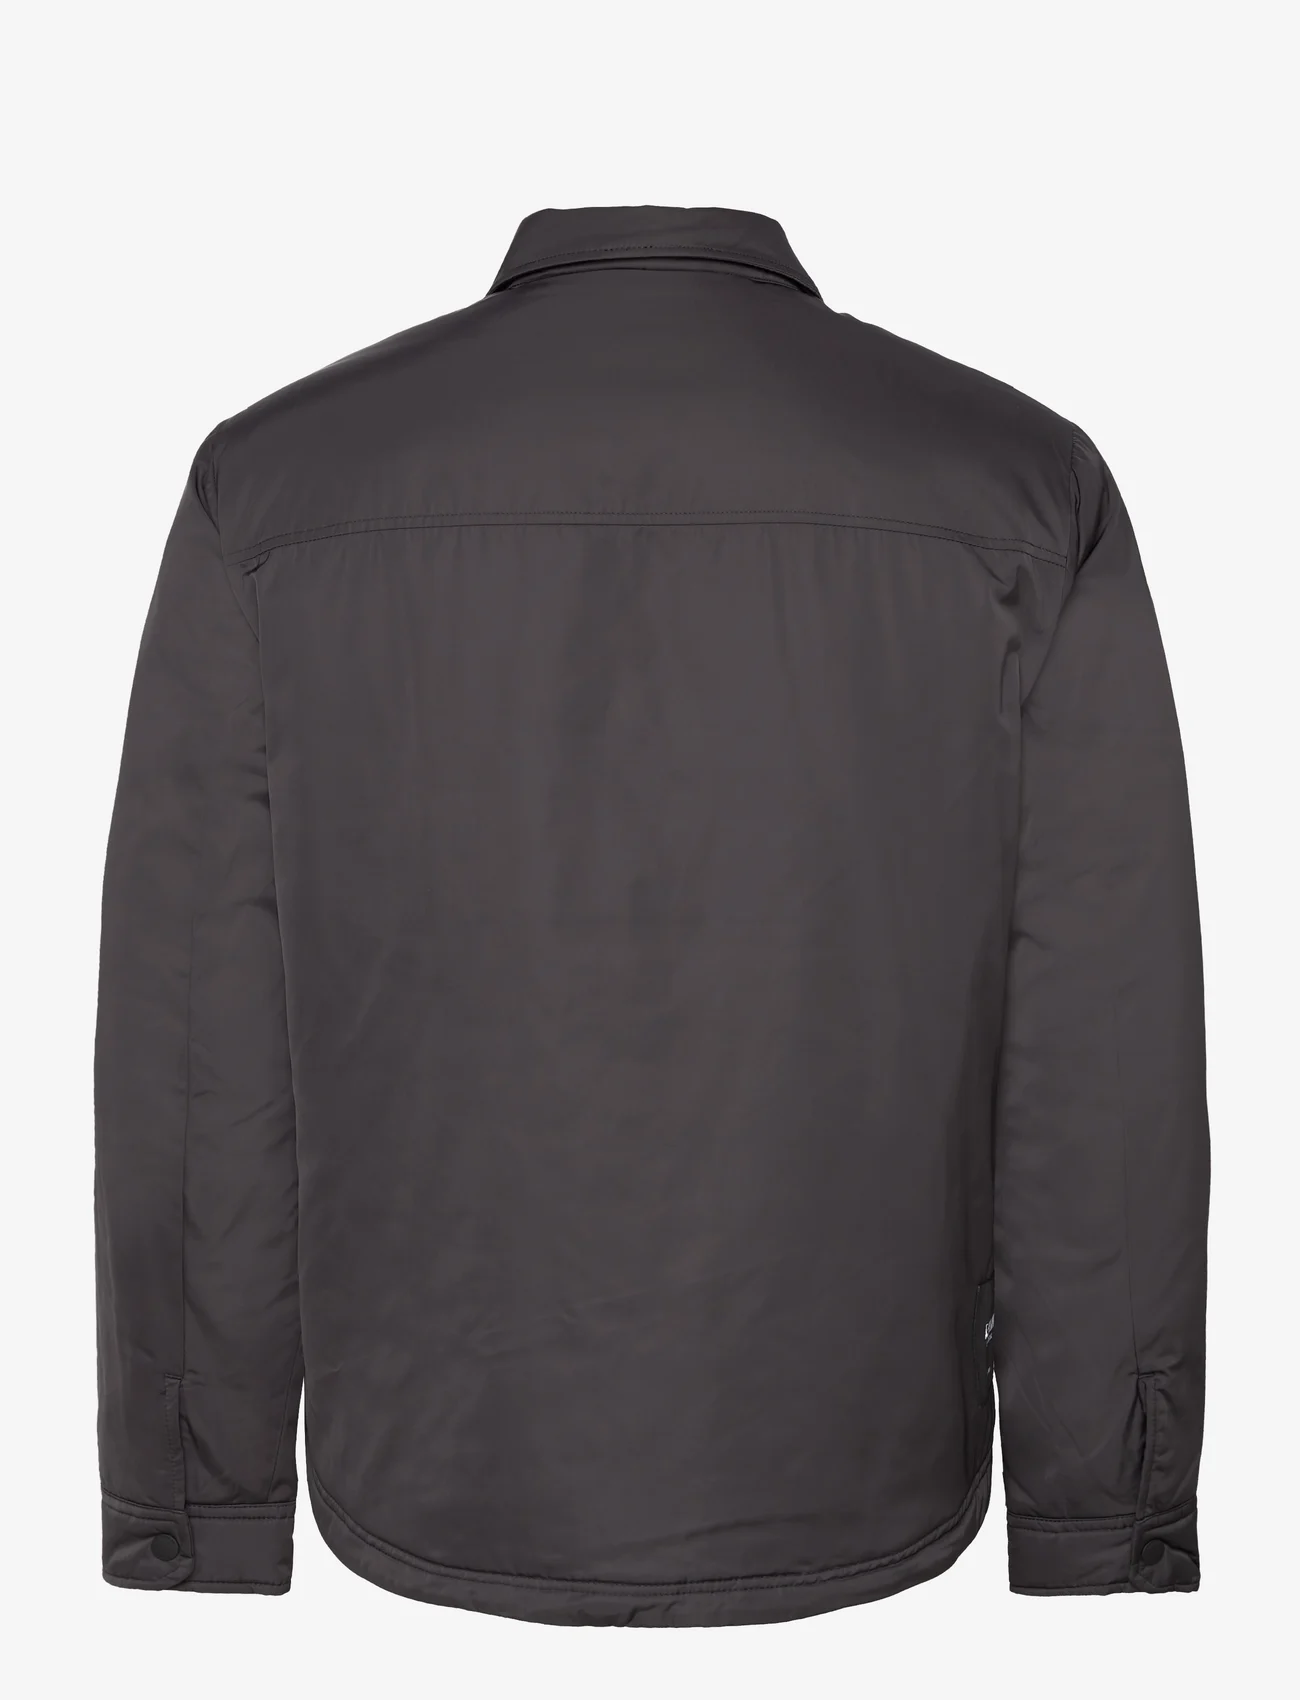 Replay - Jacket REGULAR Essential - frühlingsjacken - black - 1